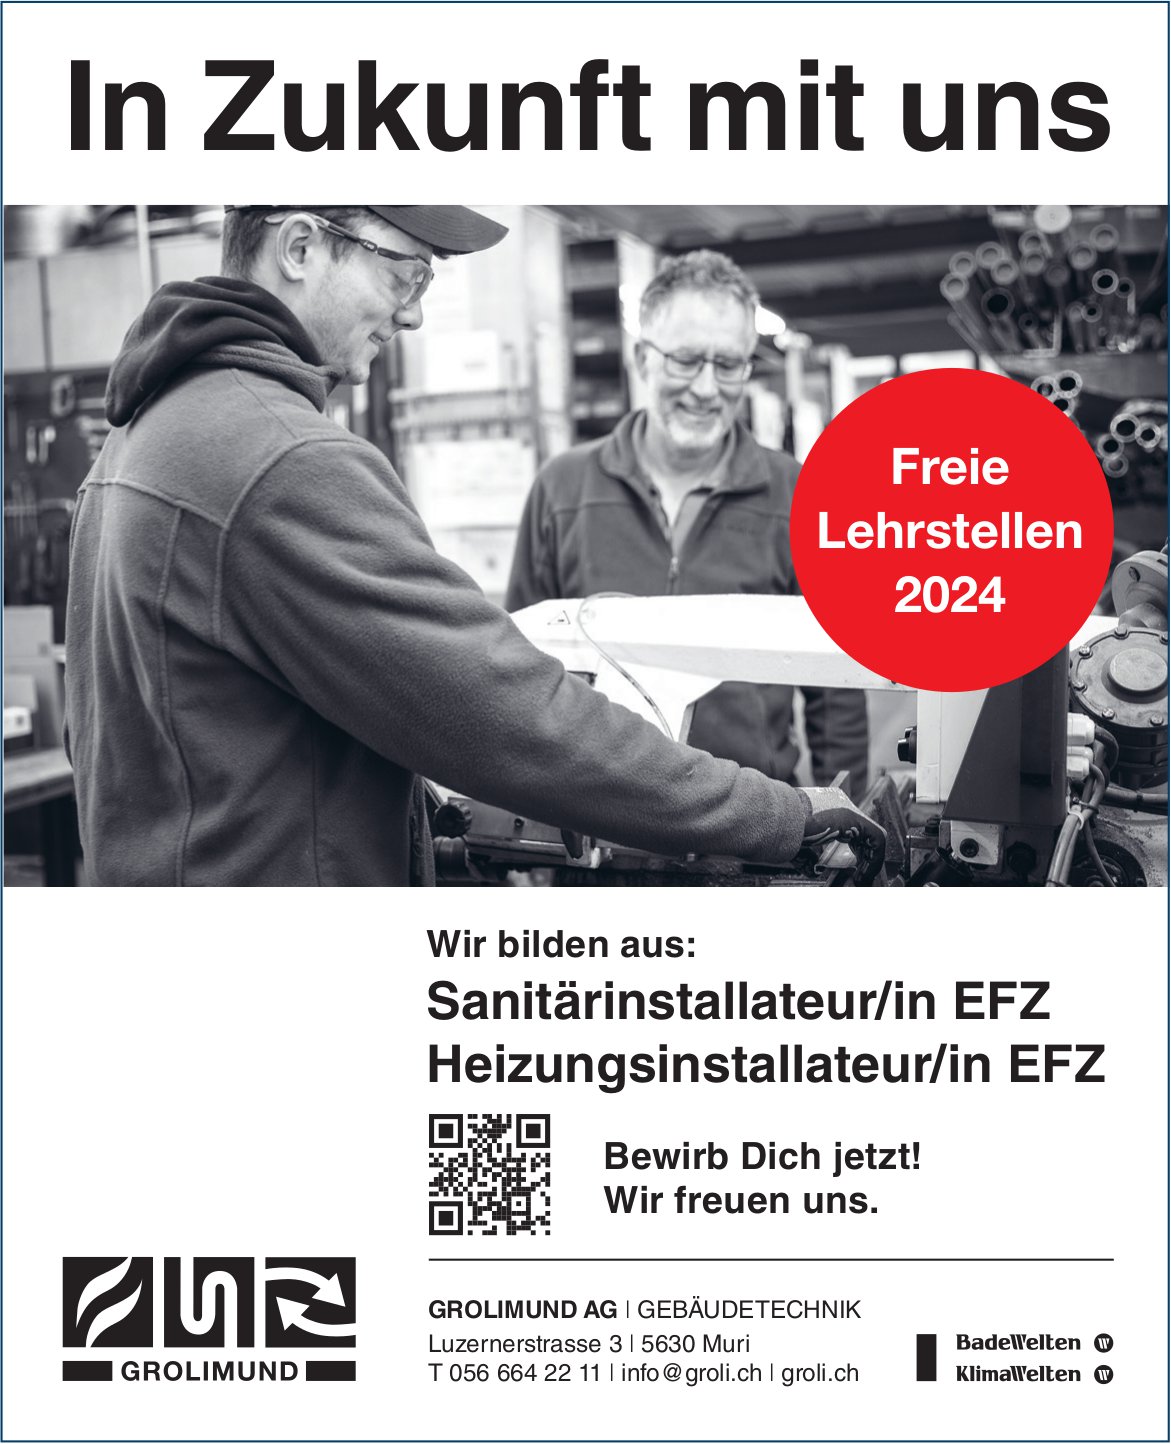 Grolimund AG, Gebäudetechnik, Muri - Lehrstellen als Sanitärinstallateur/in EFZ und Heizungsinstallateur/in EFZ